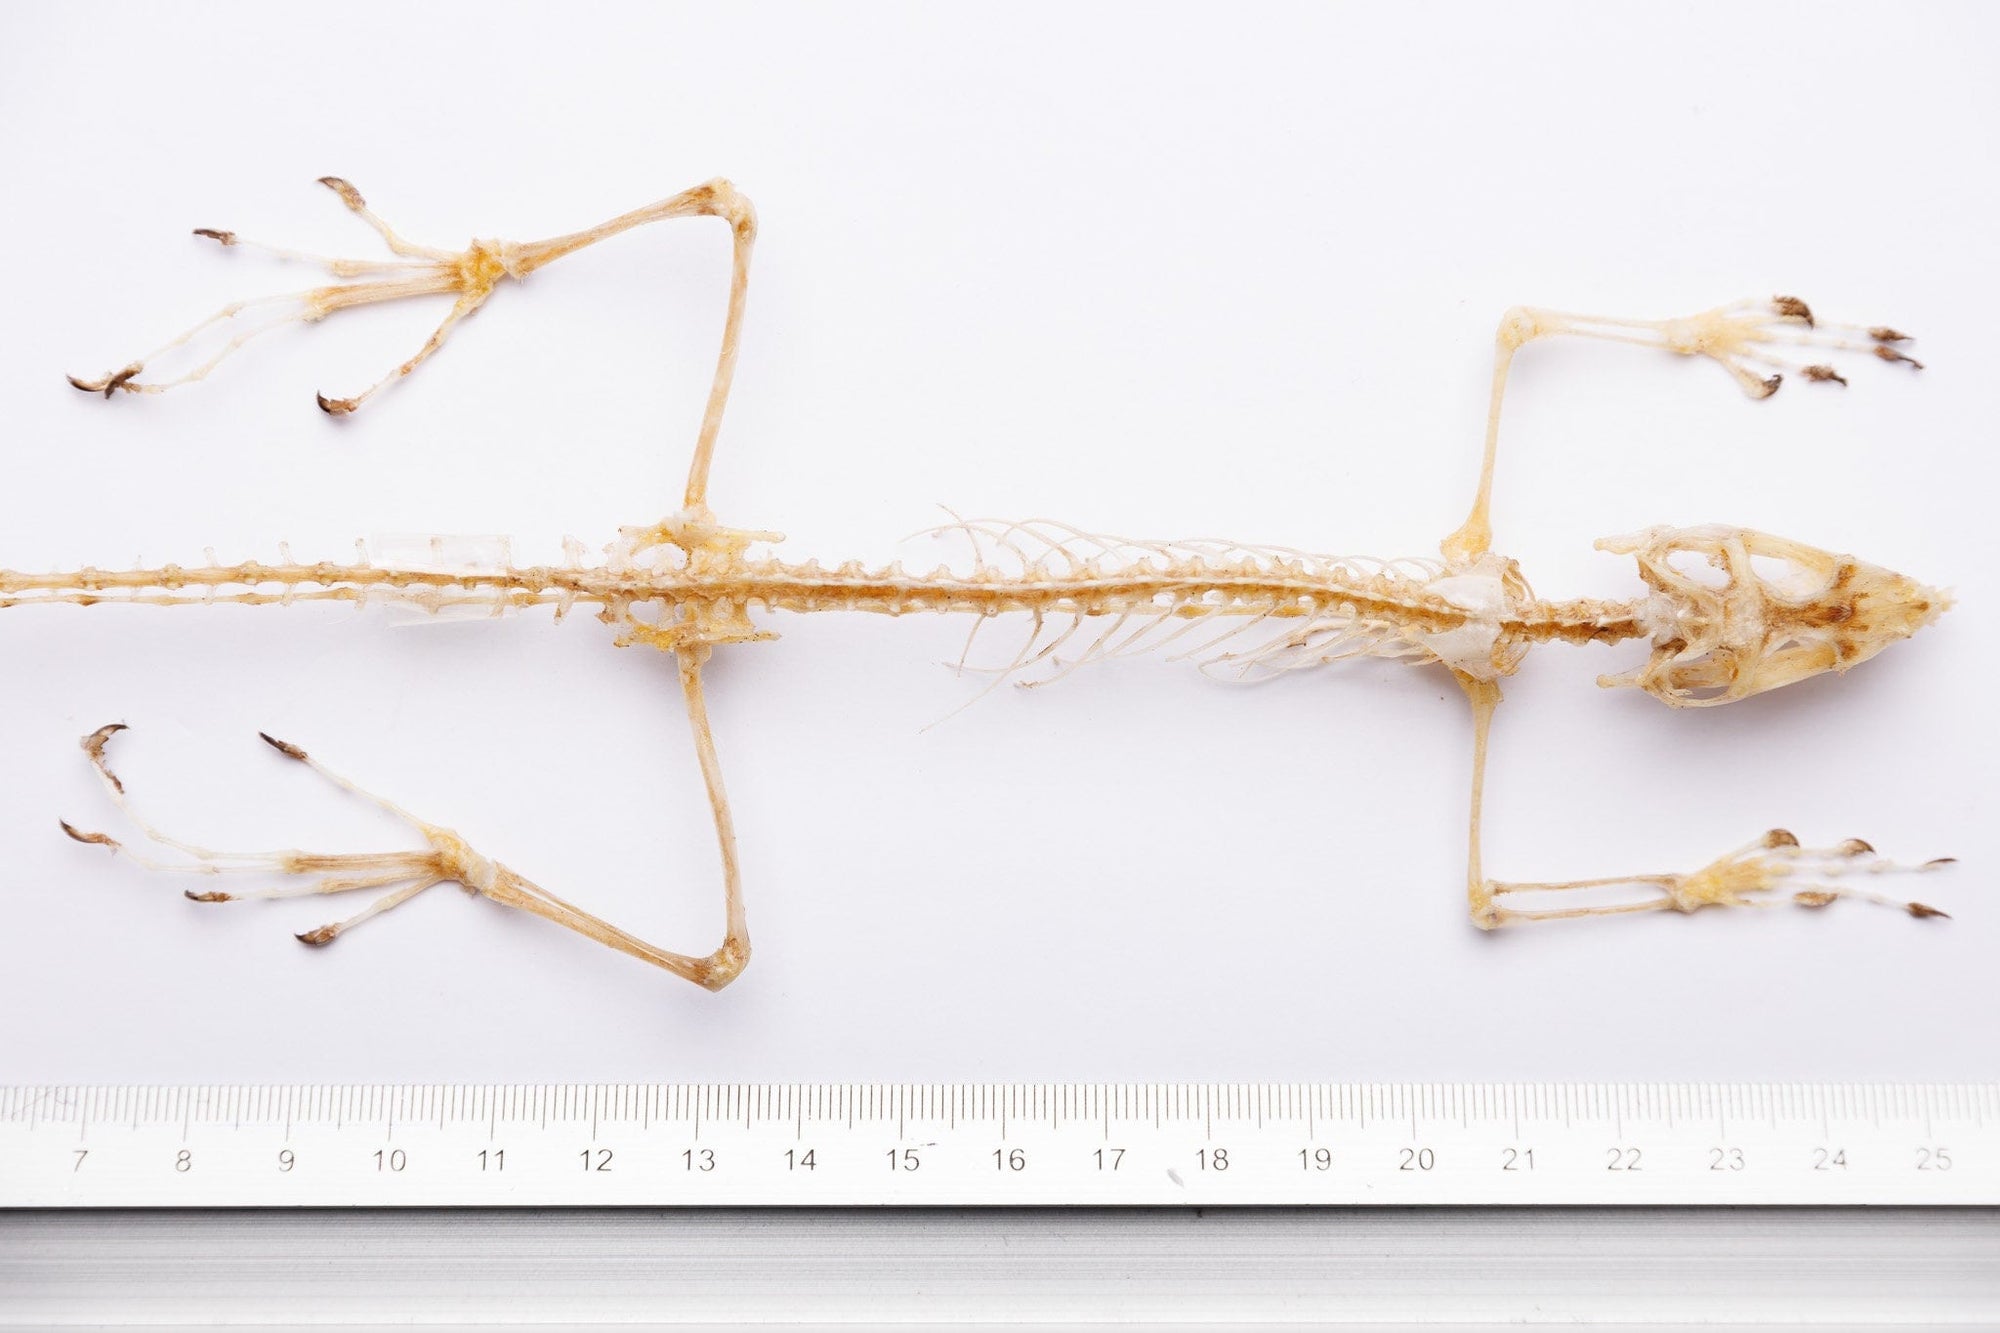 Indonesia Forest Lizard Skeleton 15" (Bronchocela jubata) | Real Skeleton Natural Specimen 400mm